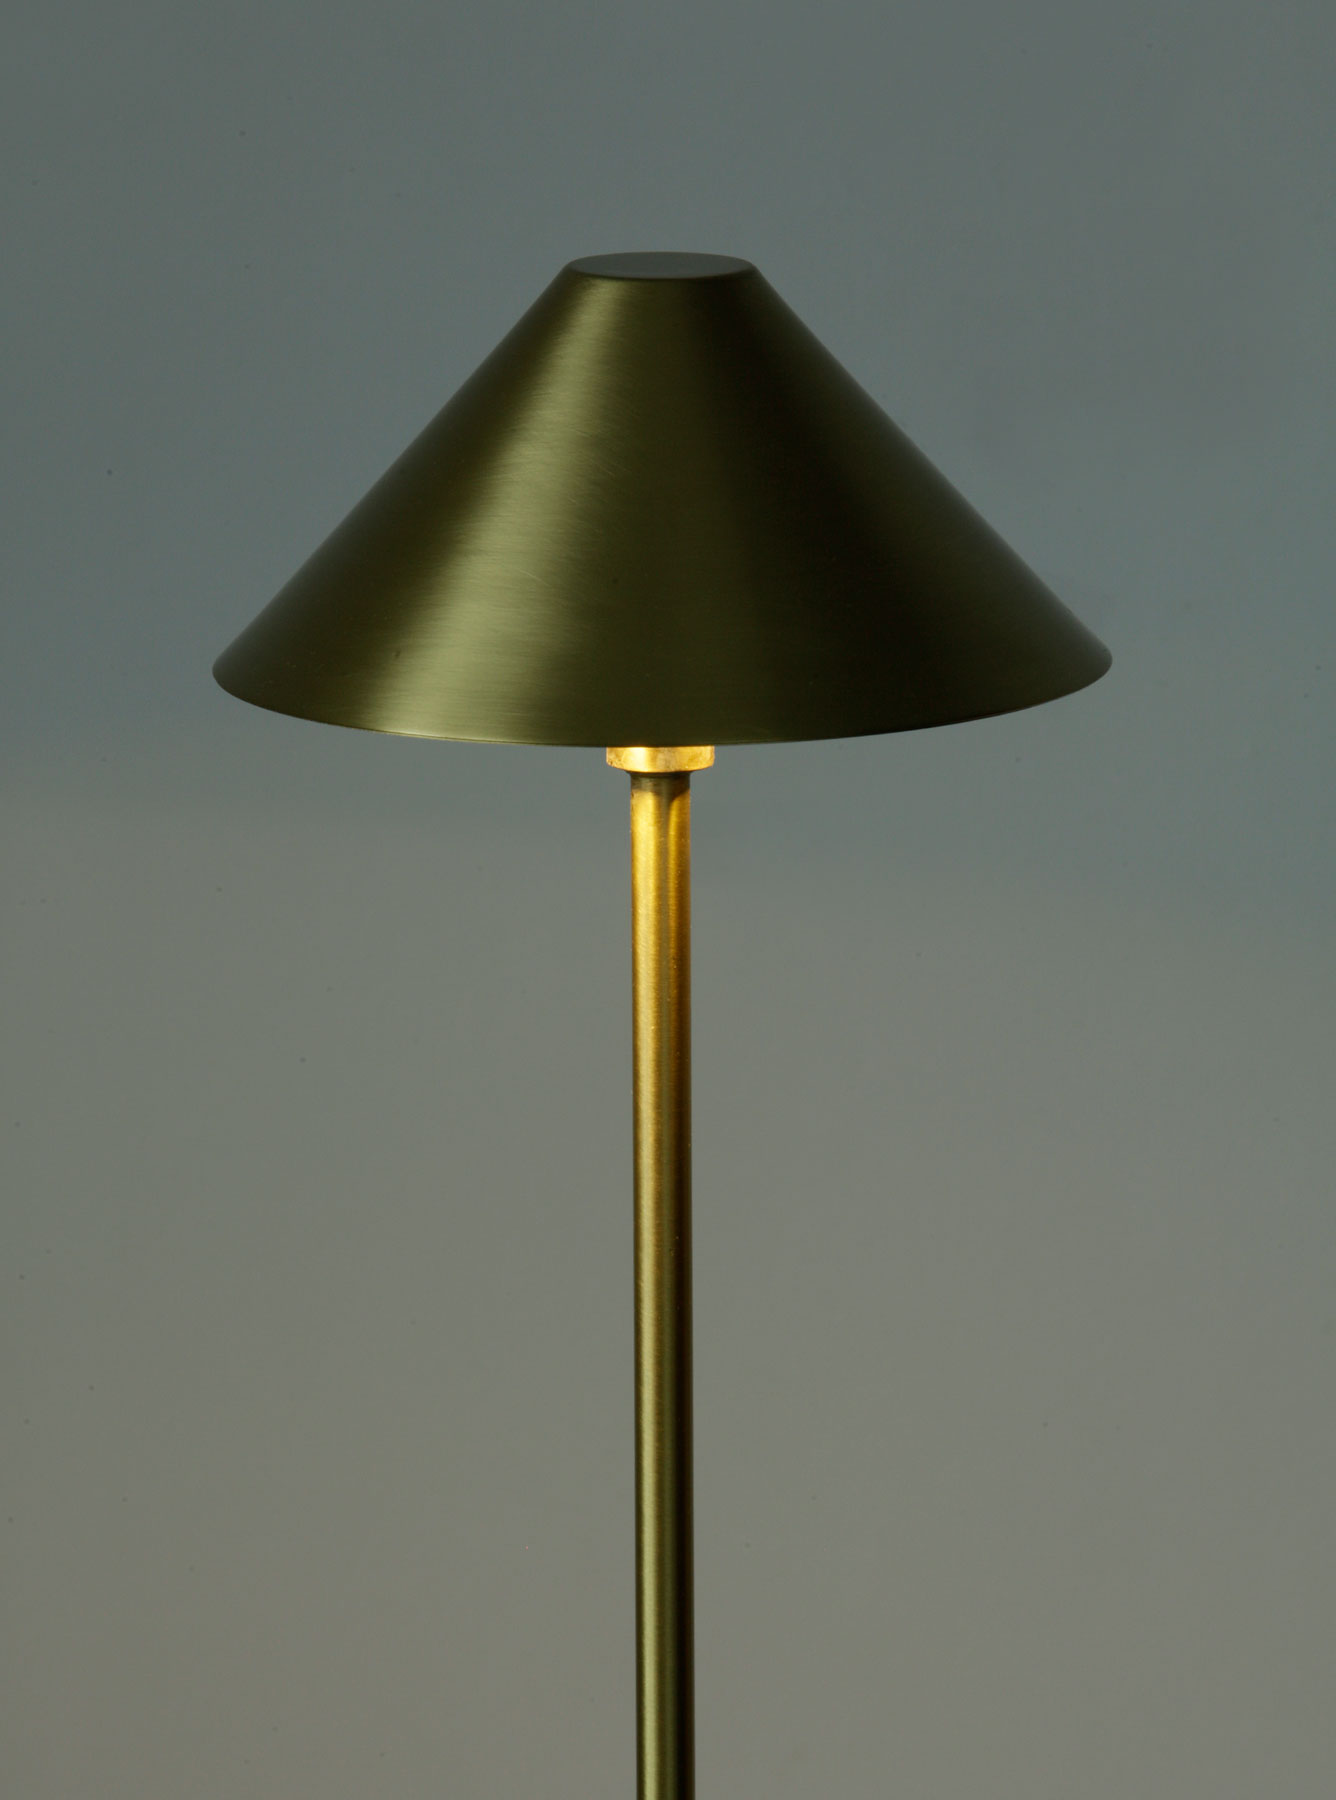 Schlanke Schirm-Stehlampe aus Messing: Kleiner Messing-Schirm mit 15 cm Durchmesser (hier 13 Messing satiniert)